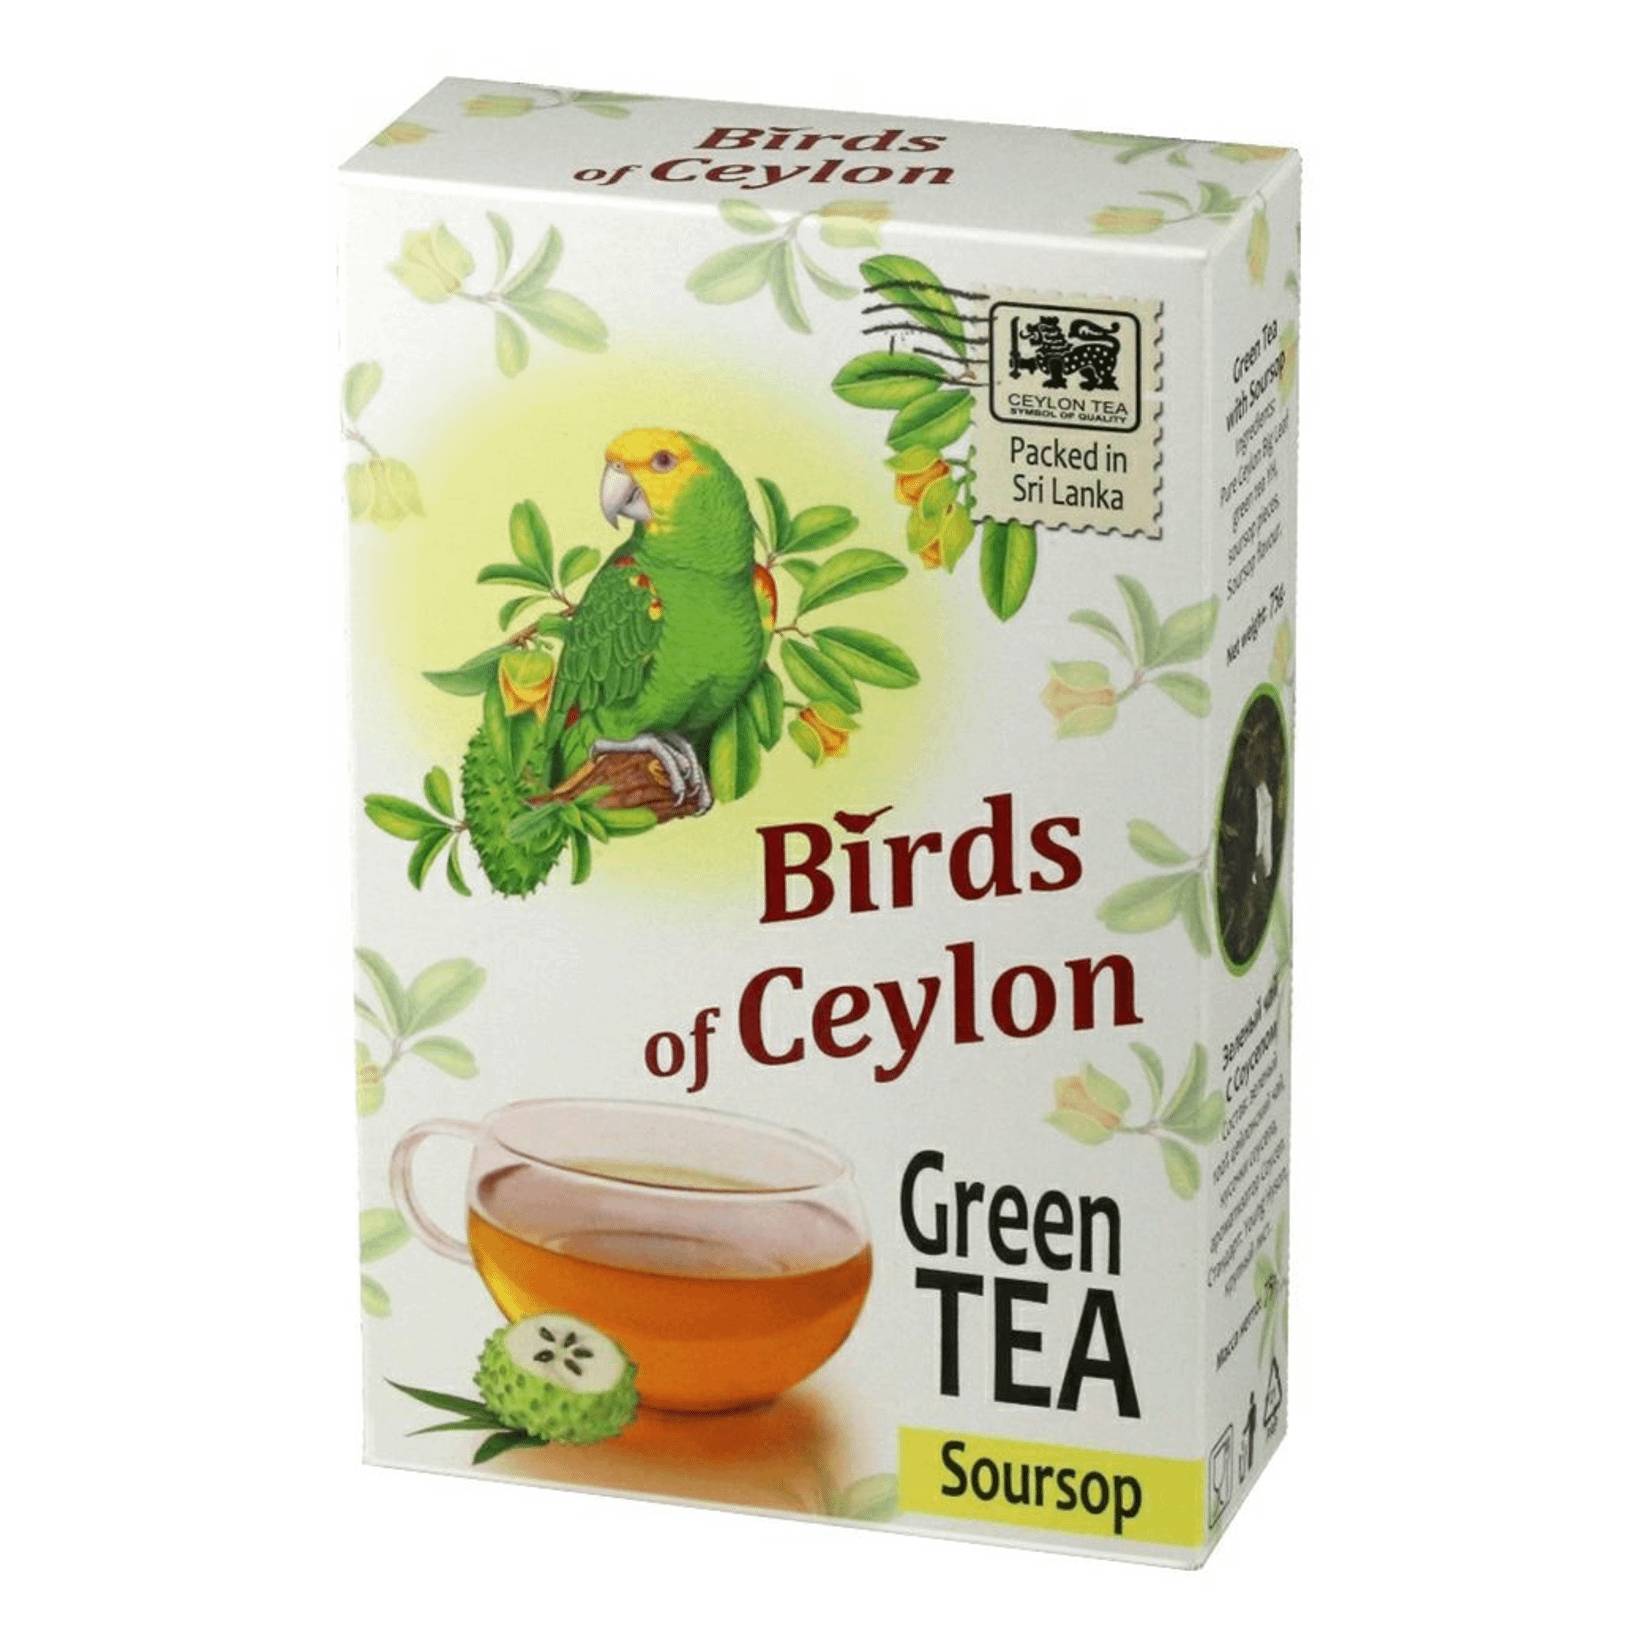 чай birds of ceylon птицы цейлона для влюбленых 75 г Чай Birds Of Ceylon птицы цейлона соусэп зеленый, 75 г